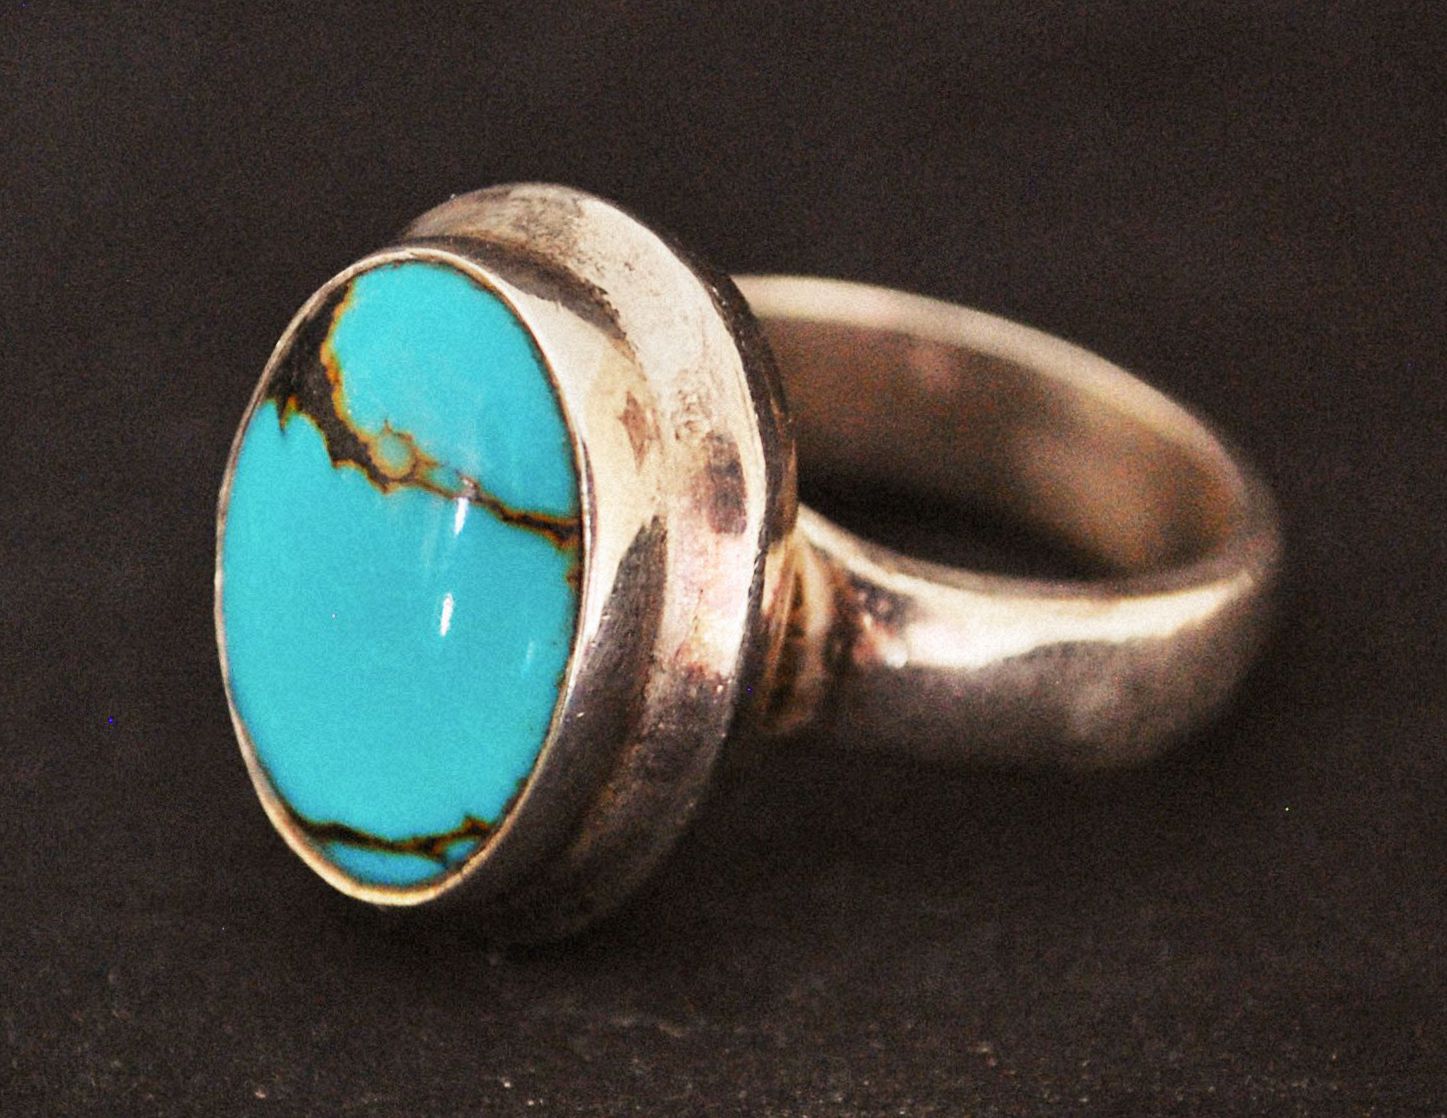 Ethnic Turquoise Ring - Size 7